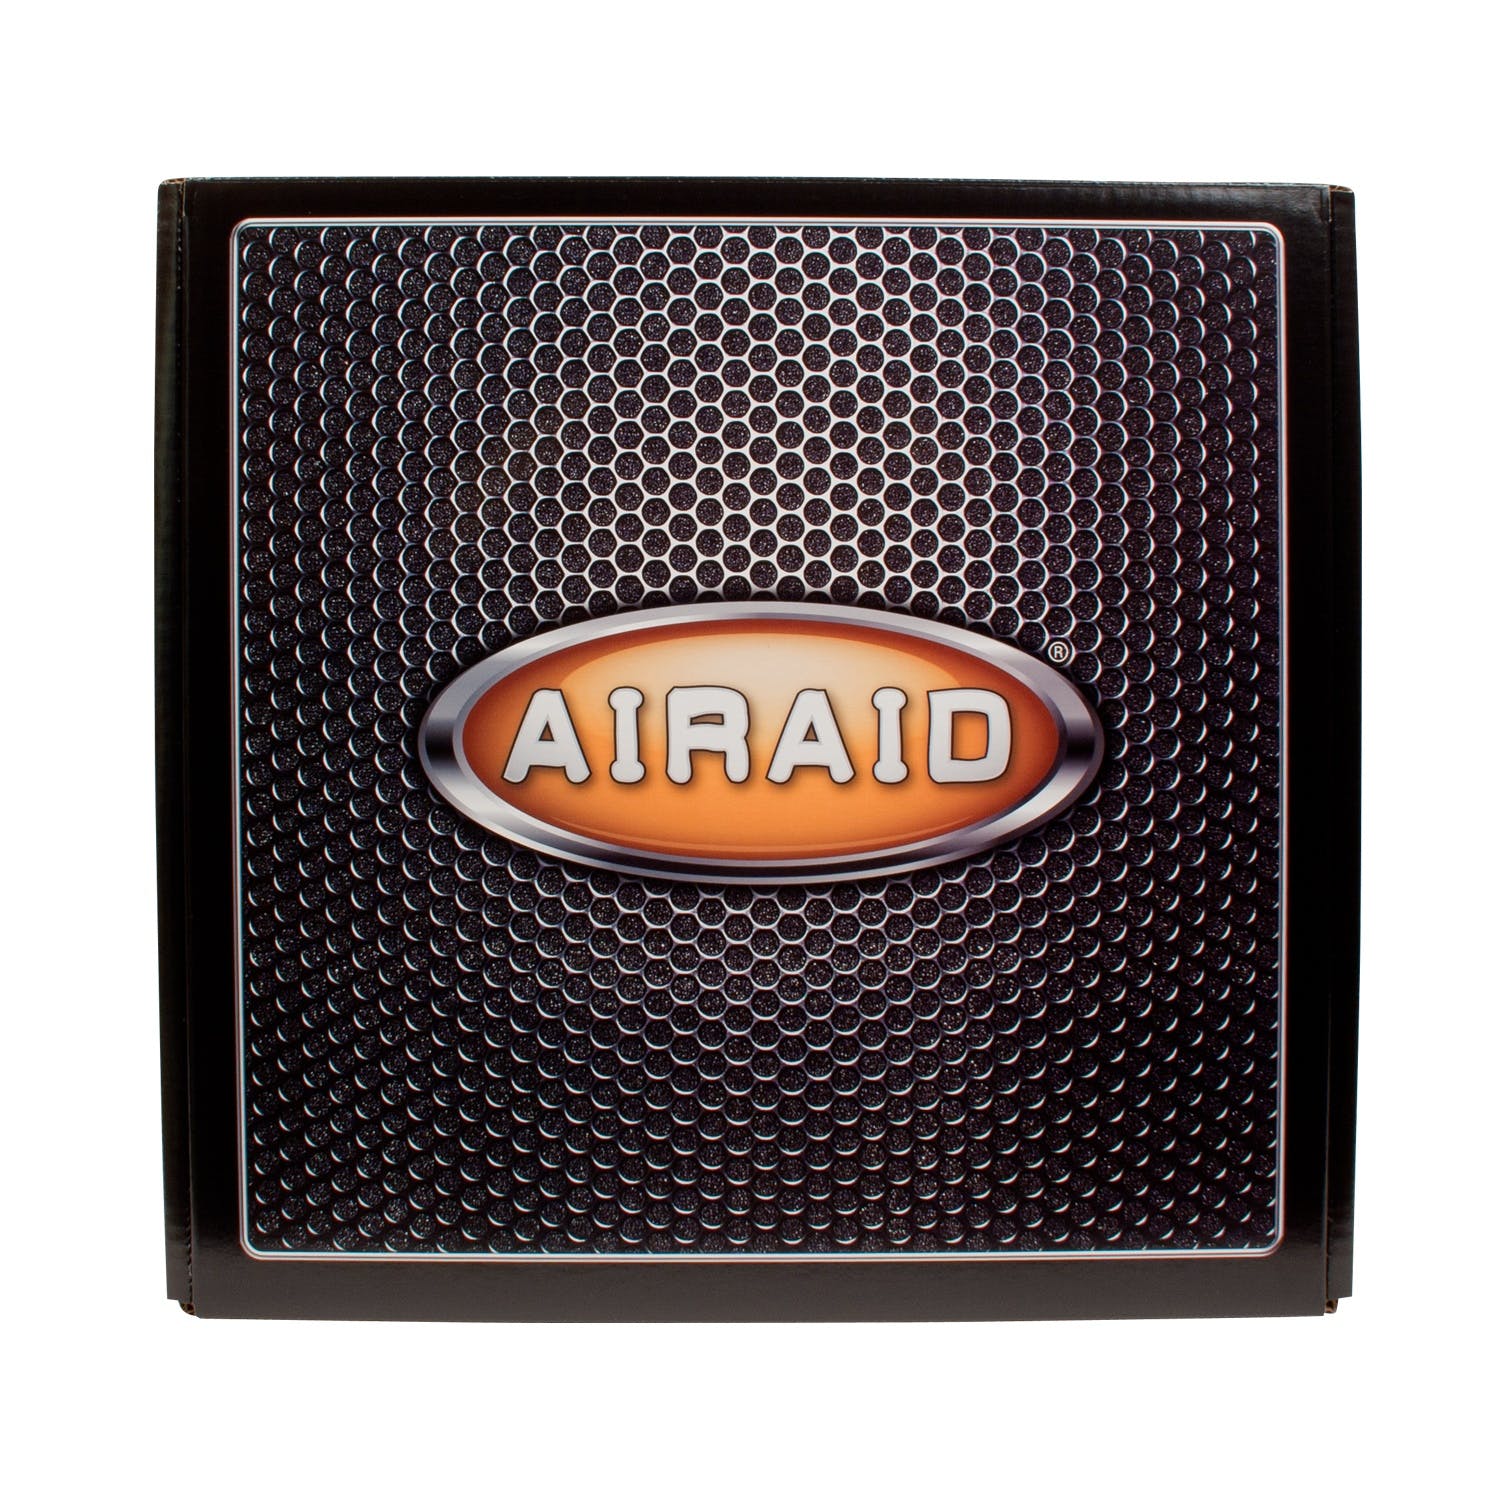 AIRAID 200-195 Performance Air Intake System